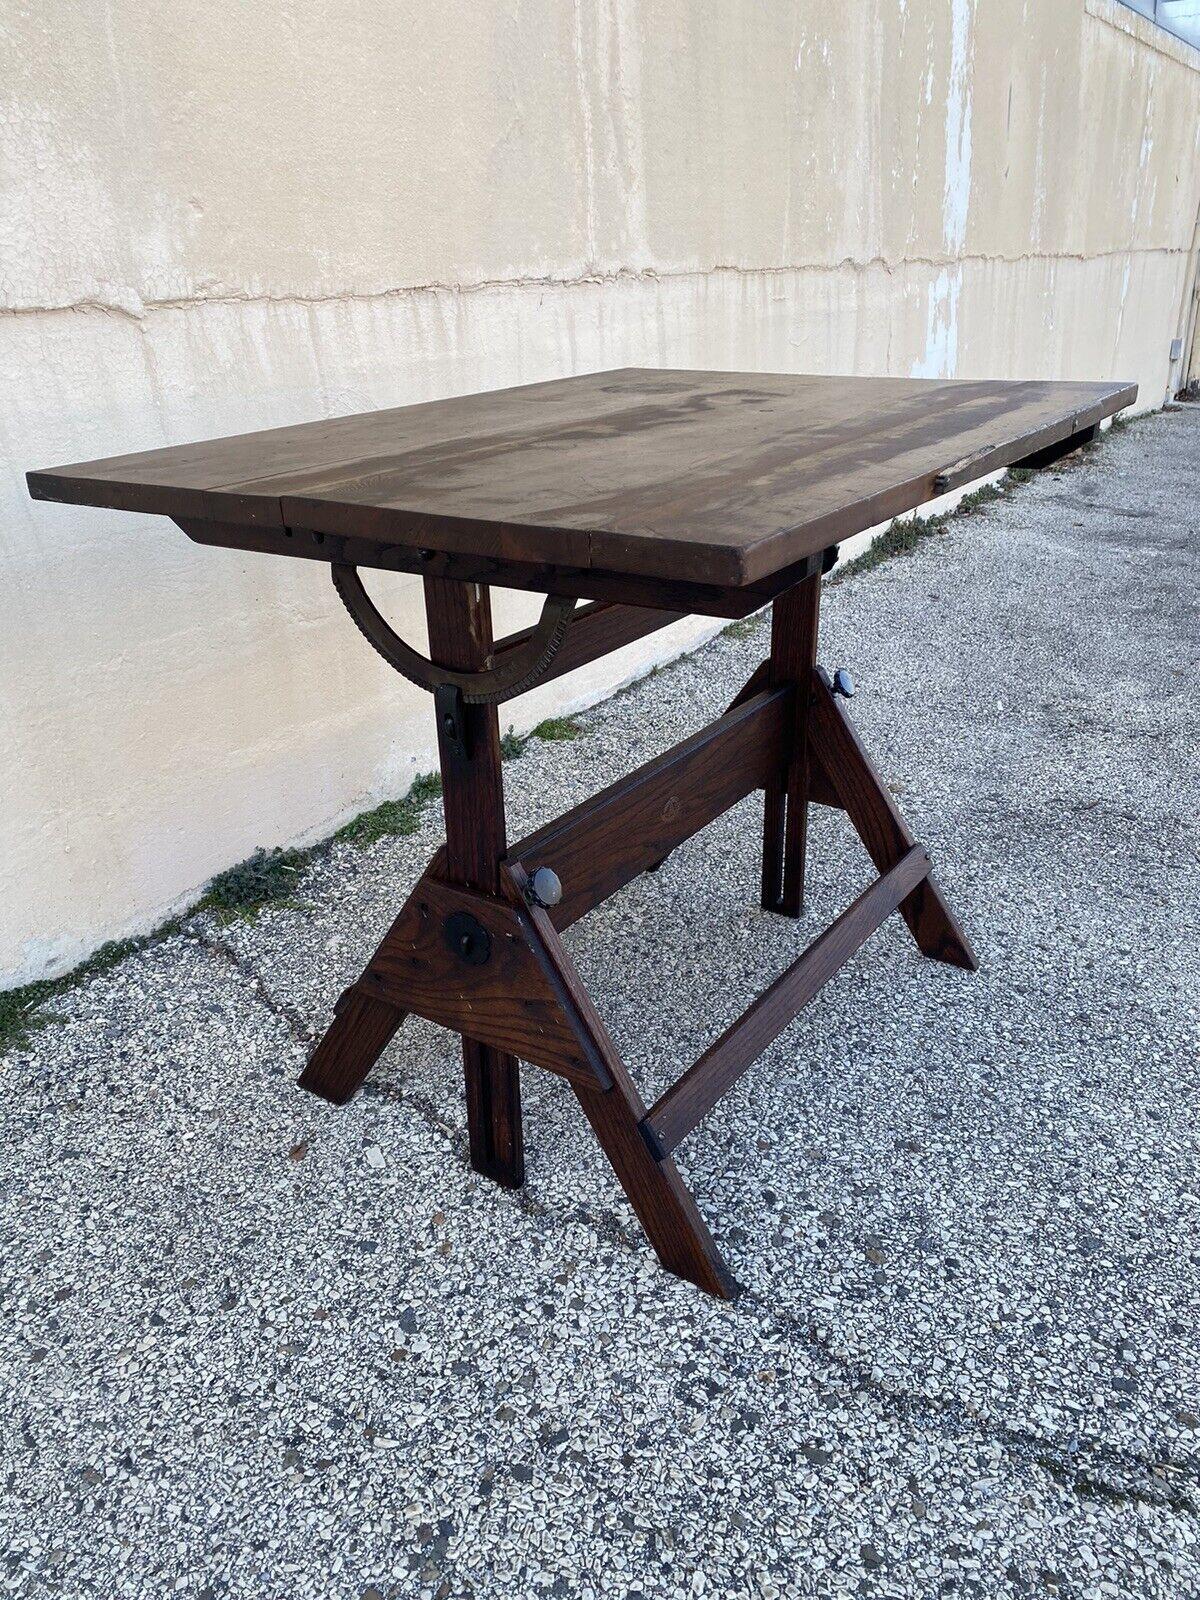 Cast Vintage Anco Bilt Oak Wood Adjustable Drafting Table Desk Industrial Work Stand